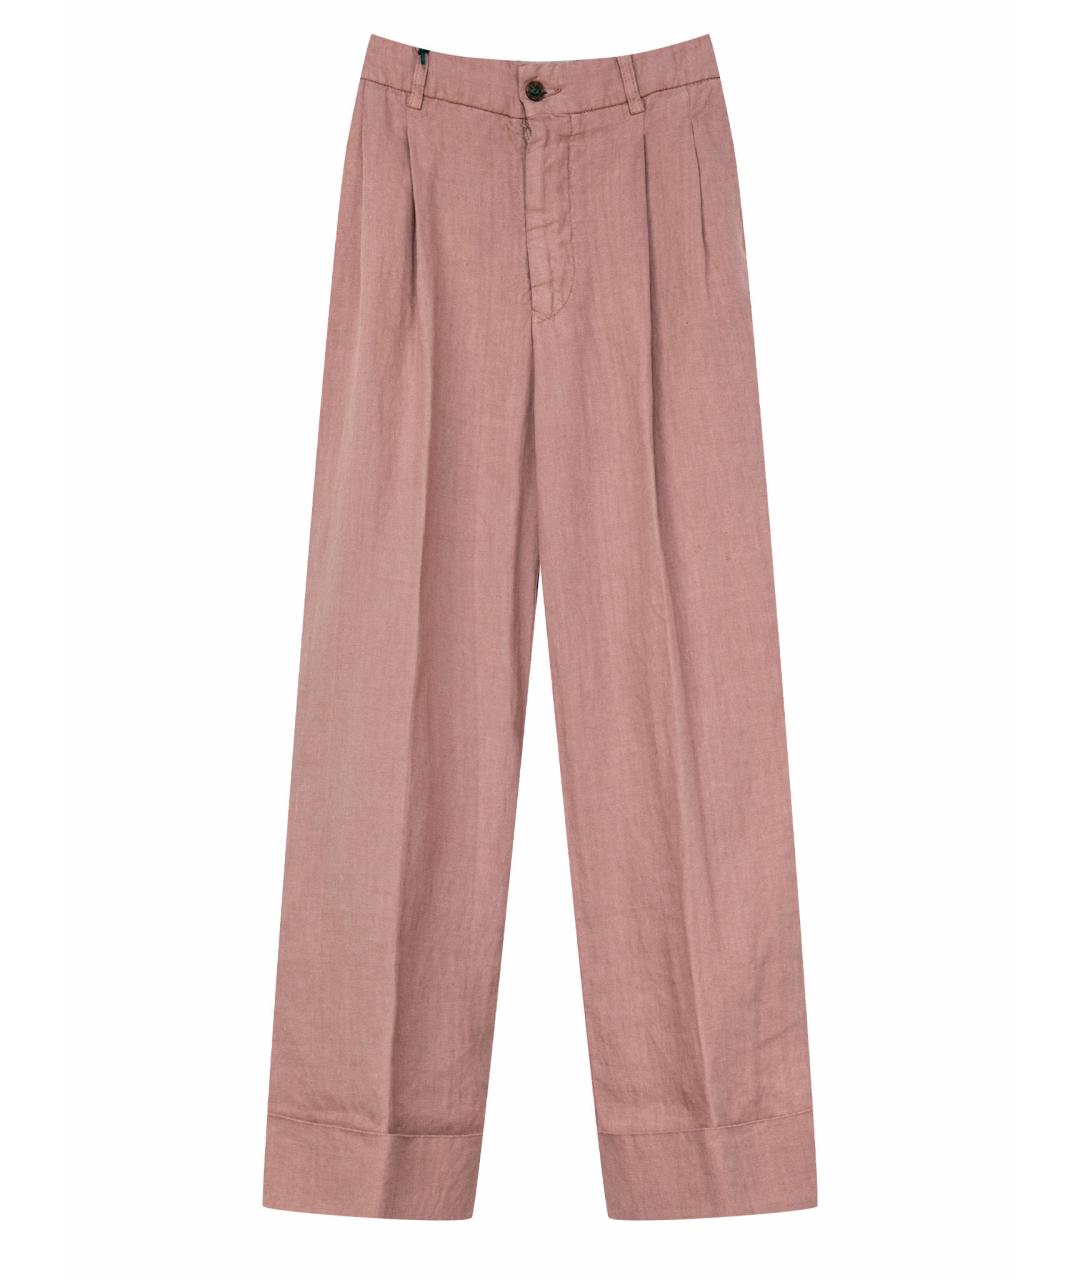 BERWICH Розовые льняные брюки широкие, фото 1